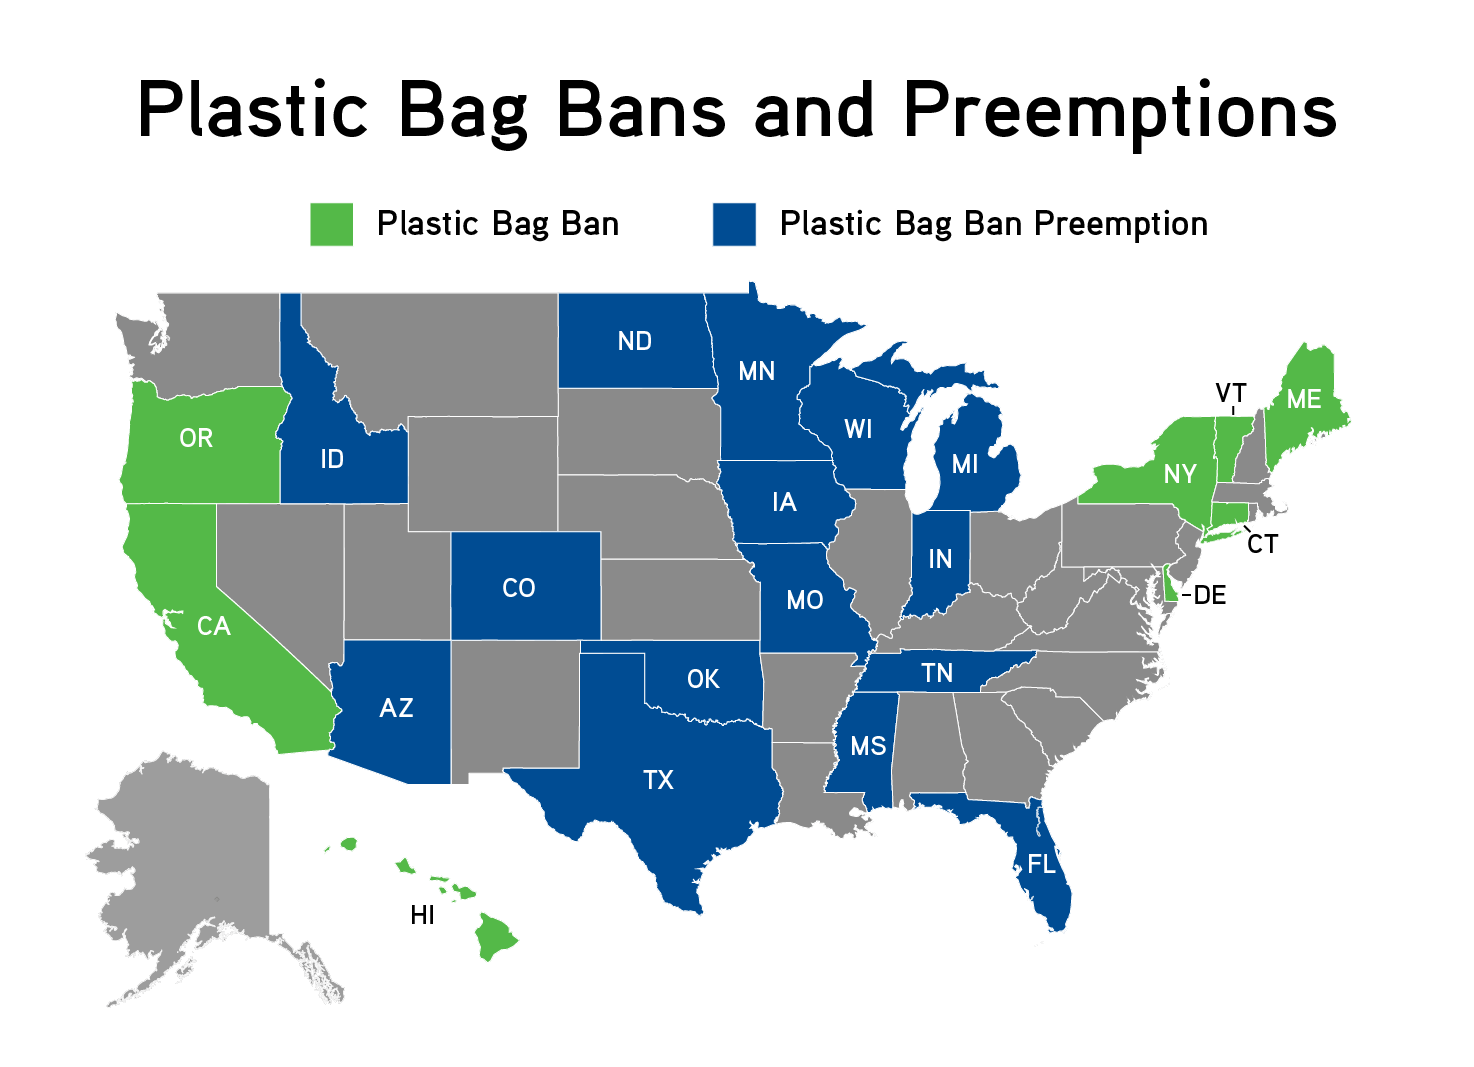 https://rockinst.org/wp-content/uploads/2020/02/Plastic-Bag-Laws_png.png